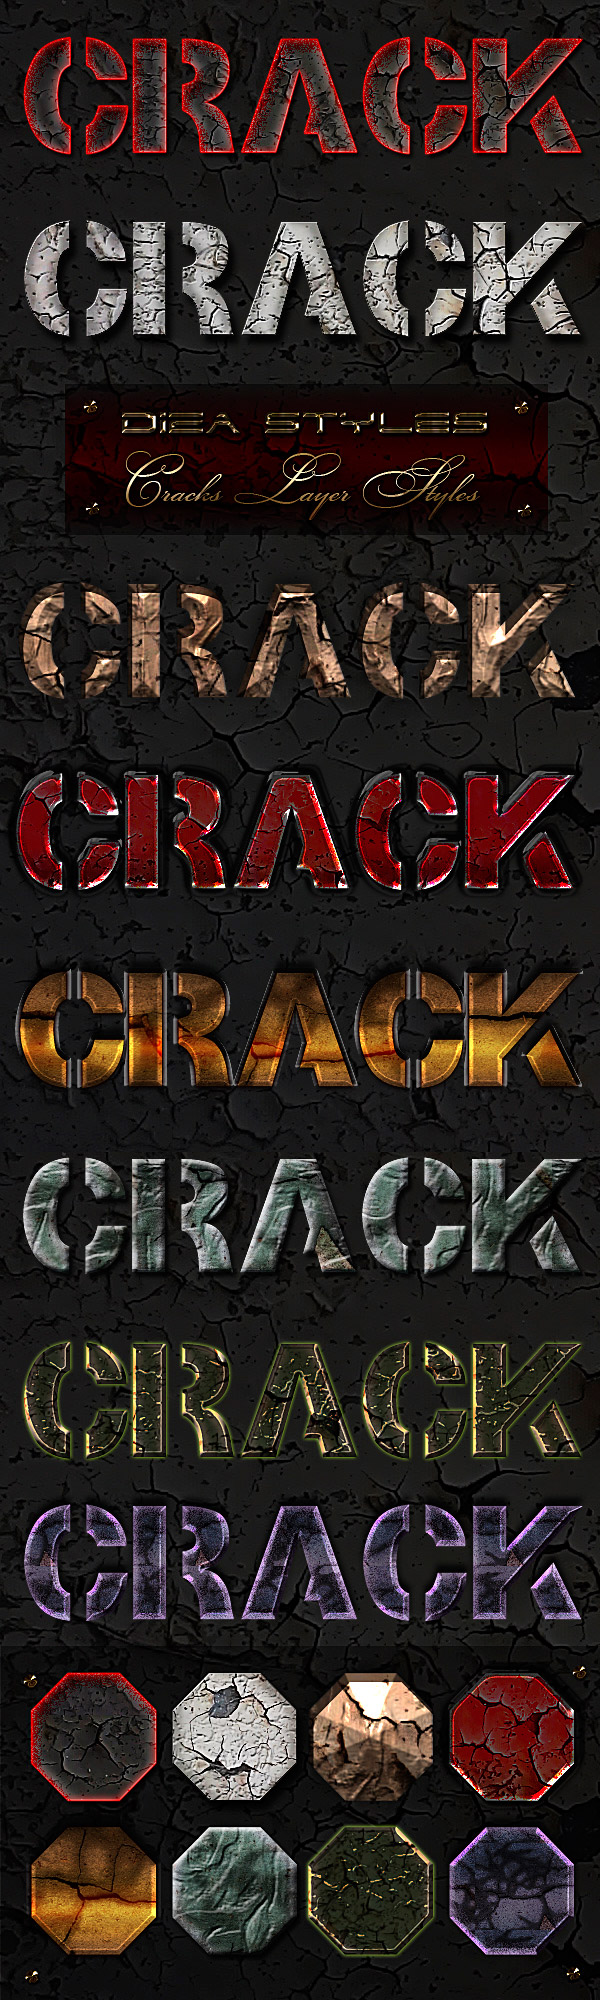 Стили для фотошоп - Трещины (Crack)